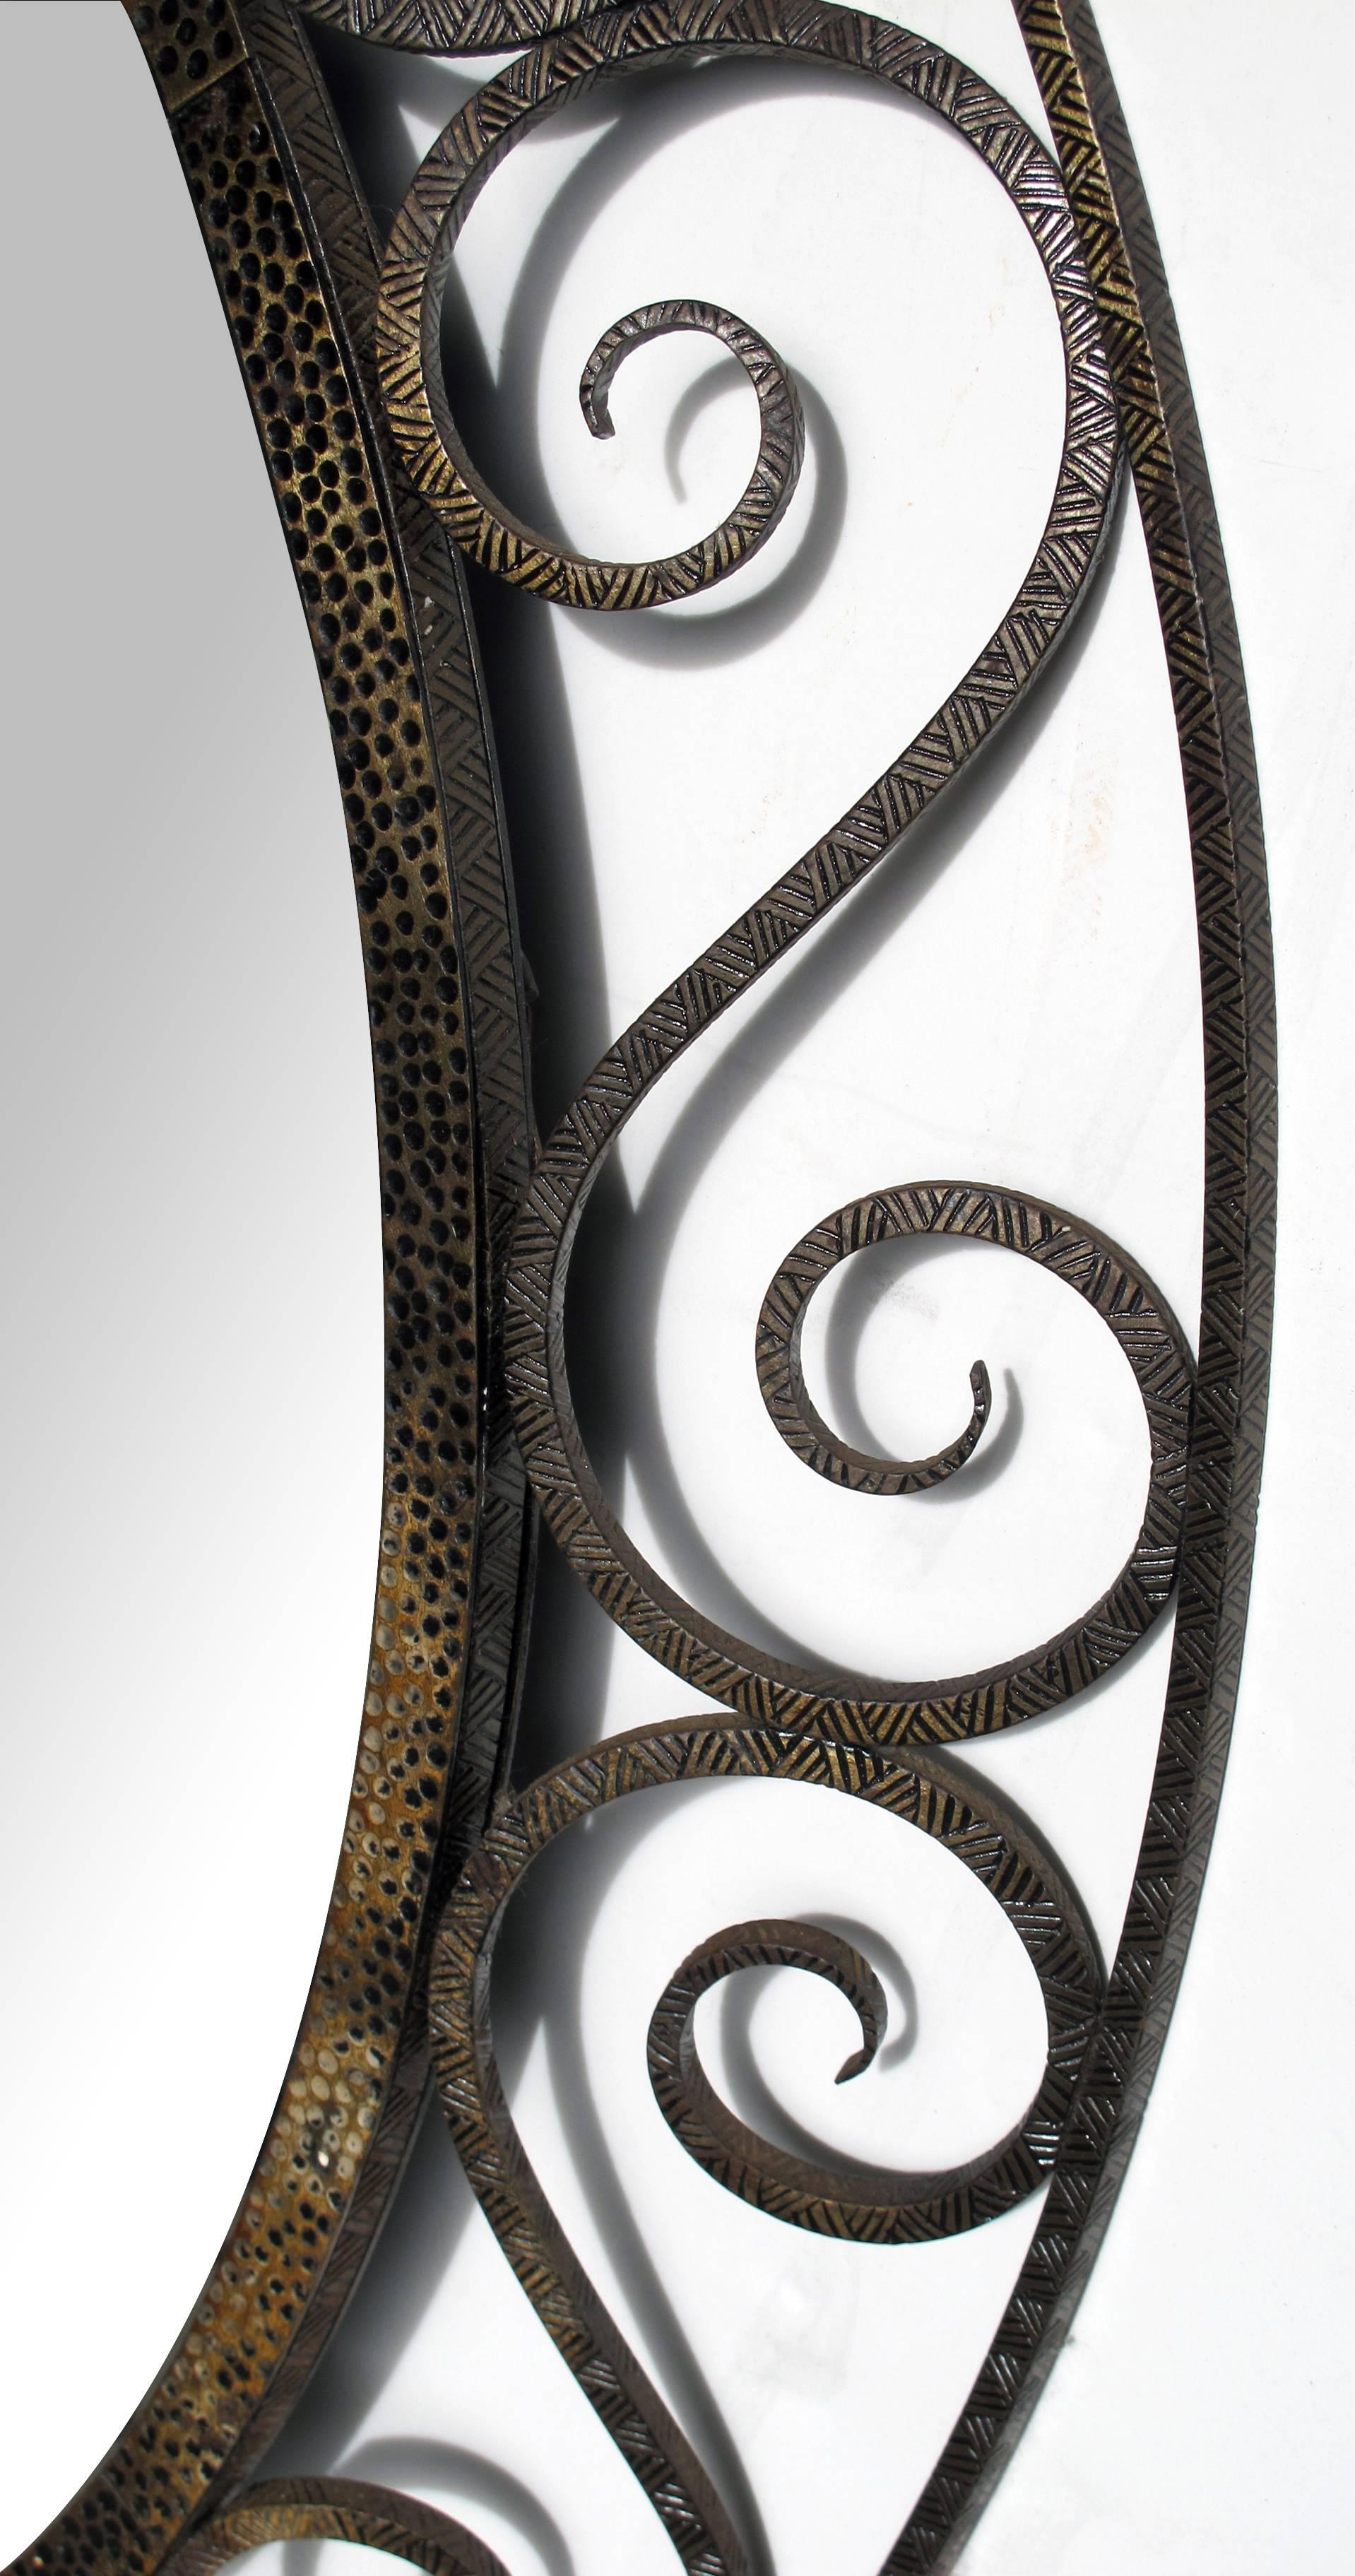 Ein handgefertigter französischer durchbrochener ovaler Spiegel aus Eisen im Stil von Edgar Brandt; die ovale Platte befindet sich in einem gestanzten Eisenrahmen, der von einem schrägen durchbrochenen Rahmen mit anmutigen S-Kurven umgeben ist